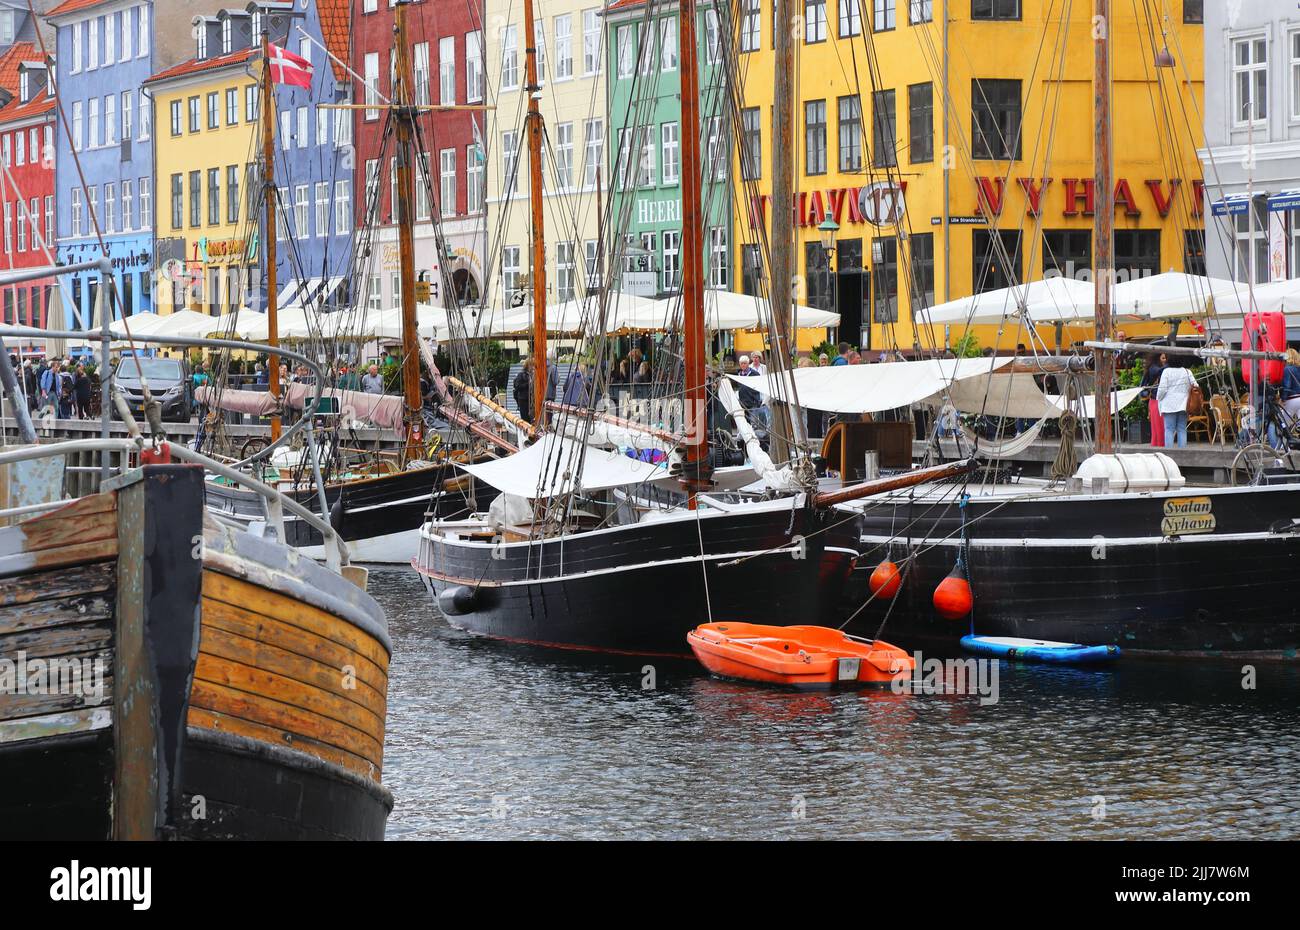 Copenhague, Dinamarca - 14 de junio de 2022: Vista del distrito del puerto de Nyahavn. Foto de stock